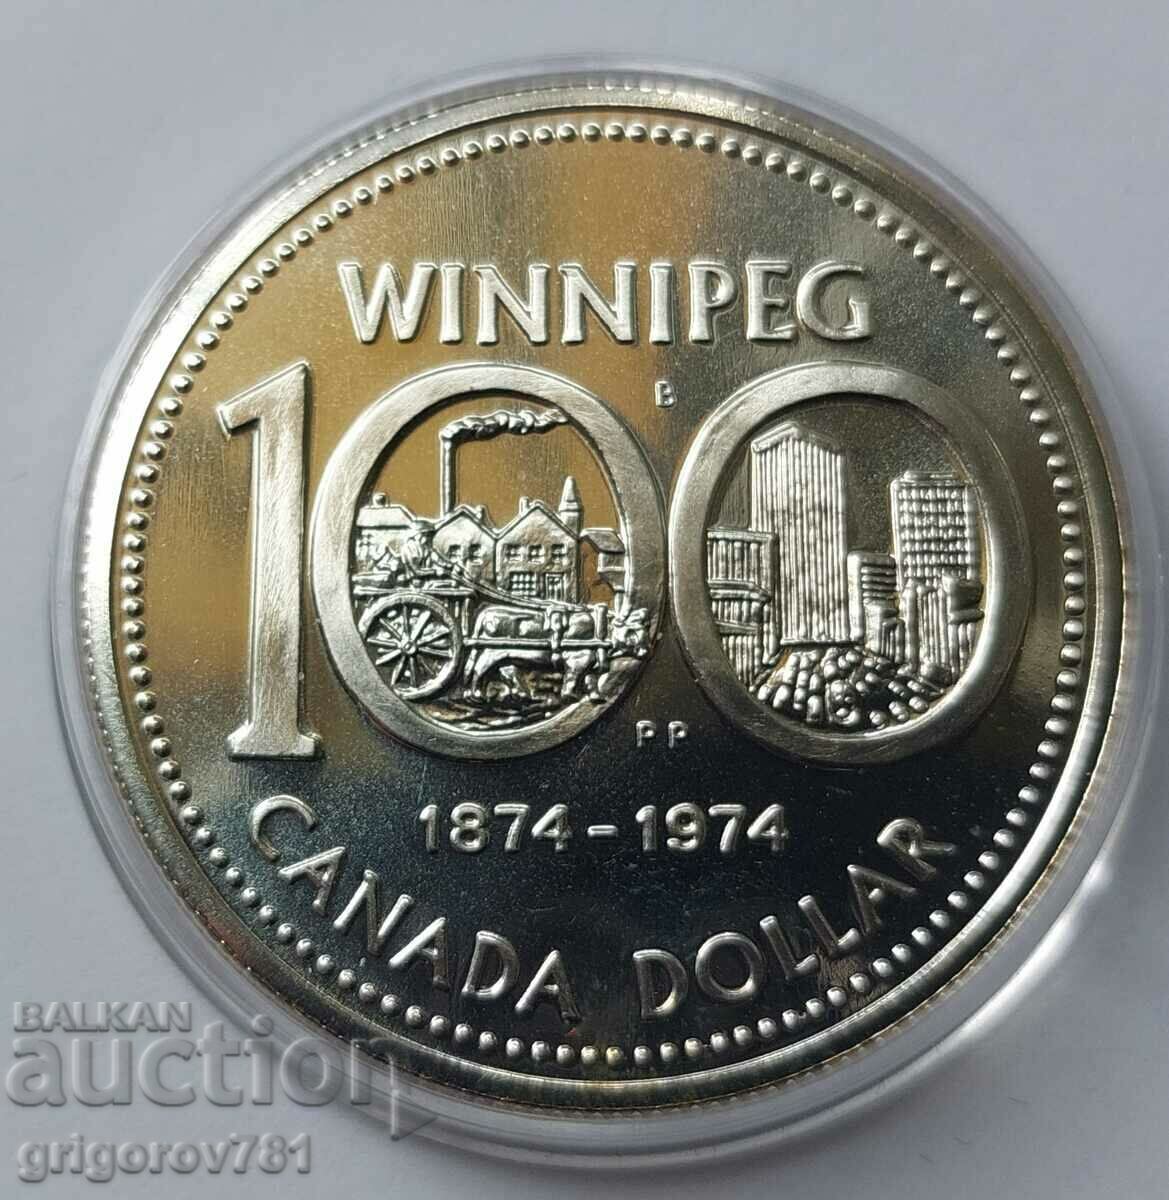 Ασημένιο 1 δολάριο Καναδάς 1974 - ασημένιο νόμισμα